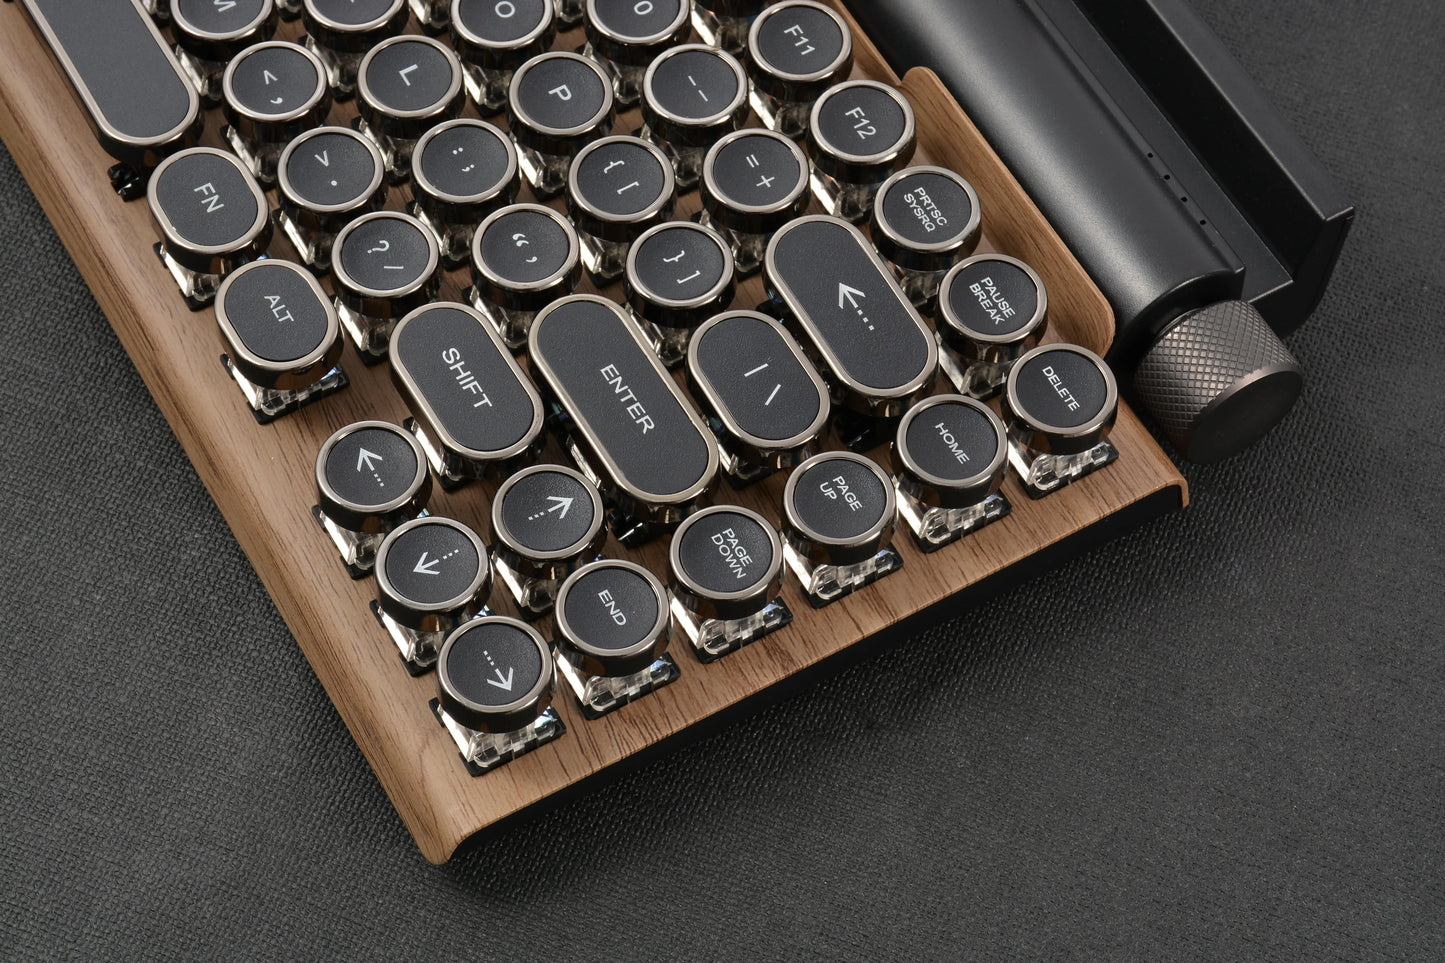 Retro-Schreibmaschinentastatur